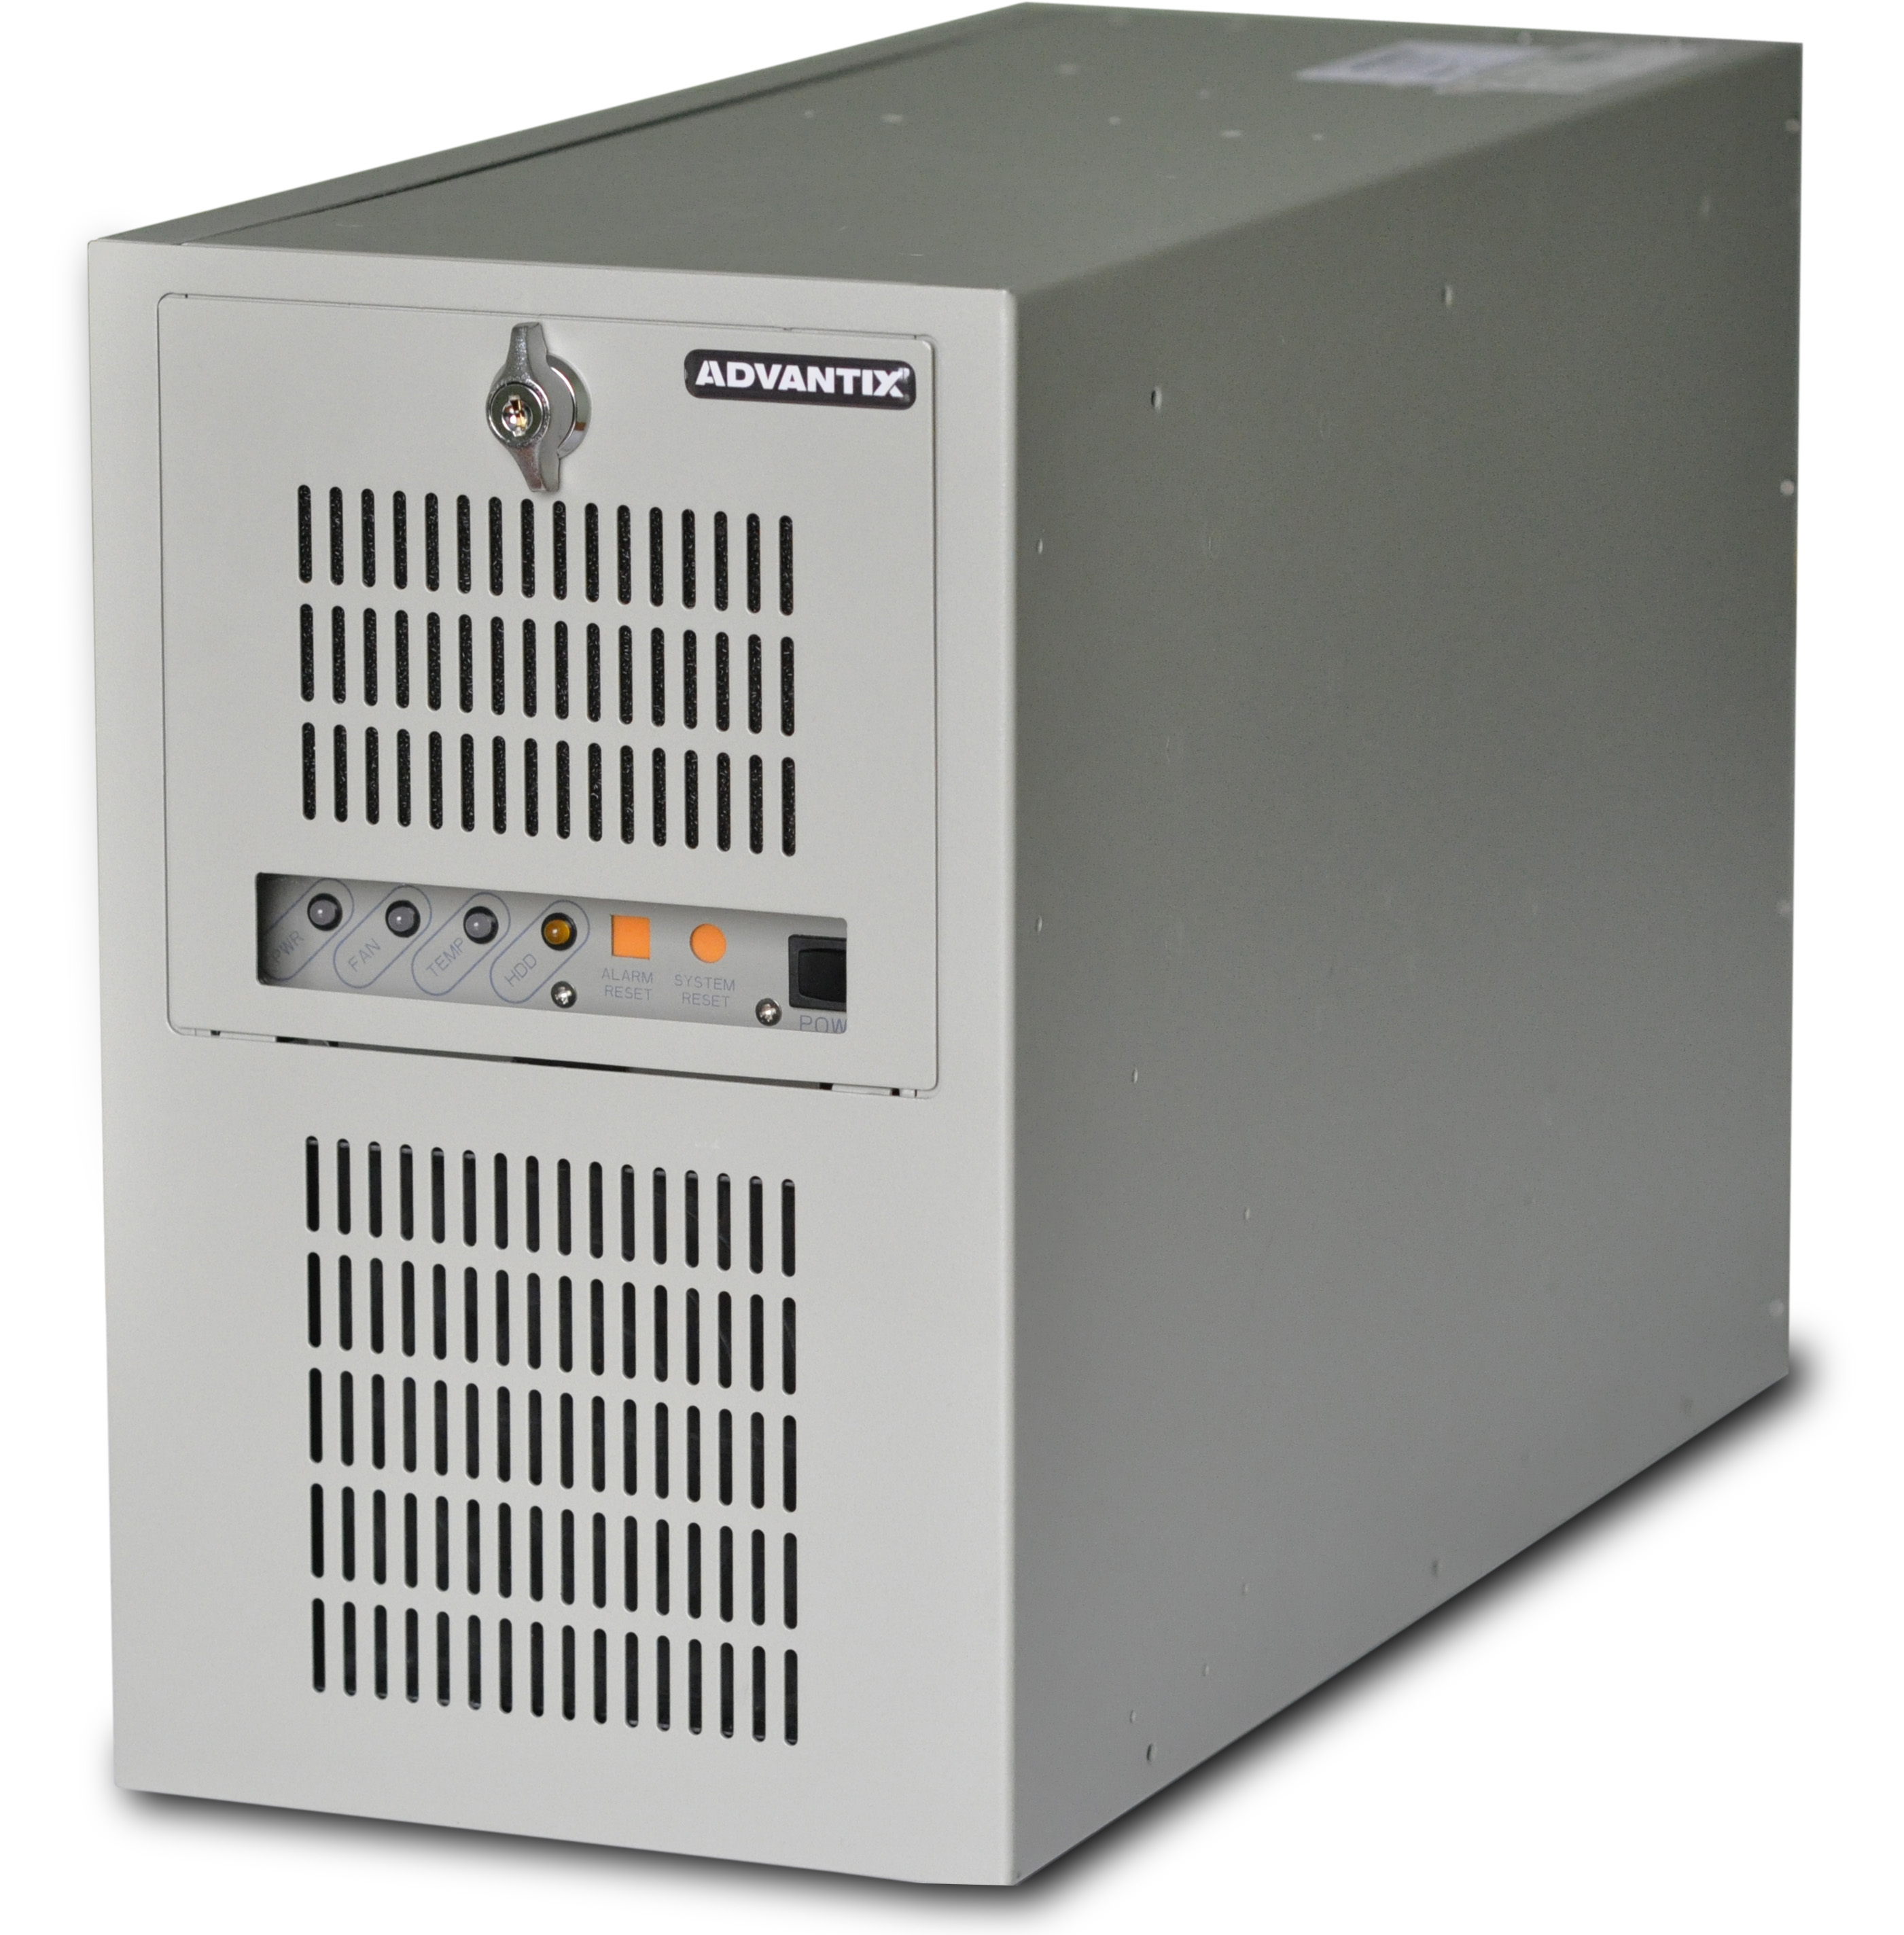 IPC-ATX-7220 — высокопроизводительная станция оператора АСУ настольного исполнения